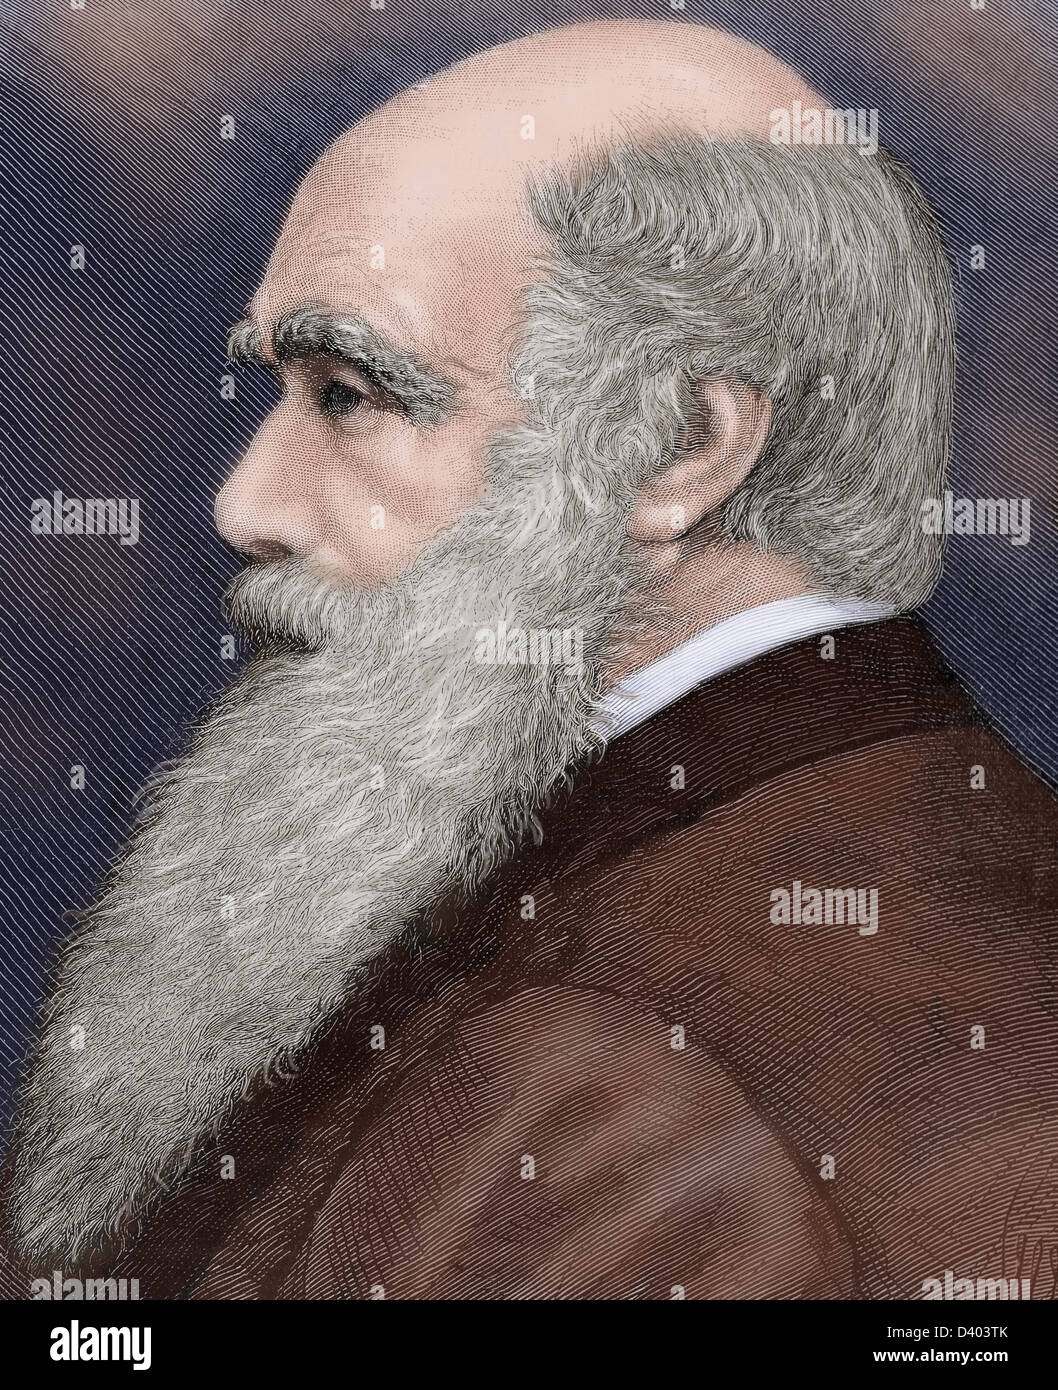 Charles Robert Darwin (1809-1882), britischer Naturforscher. Farbige Gravur. Stockfoto